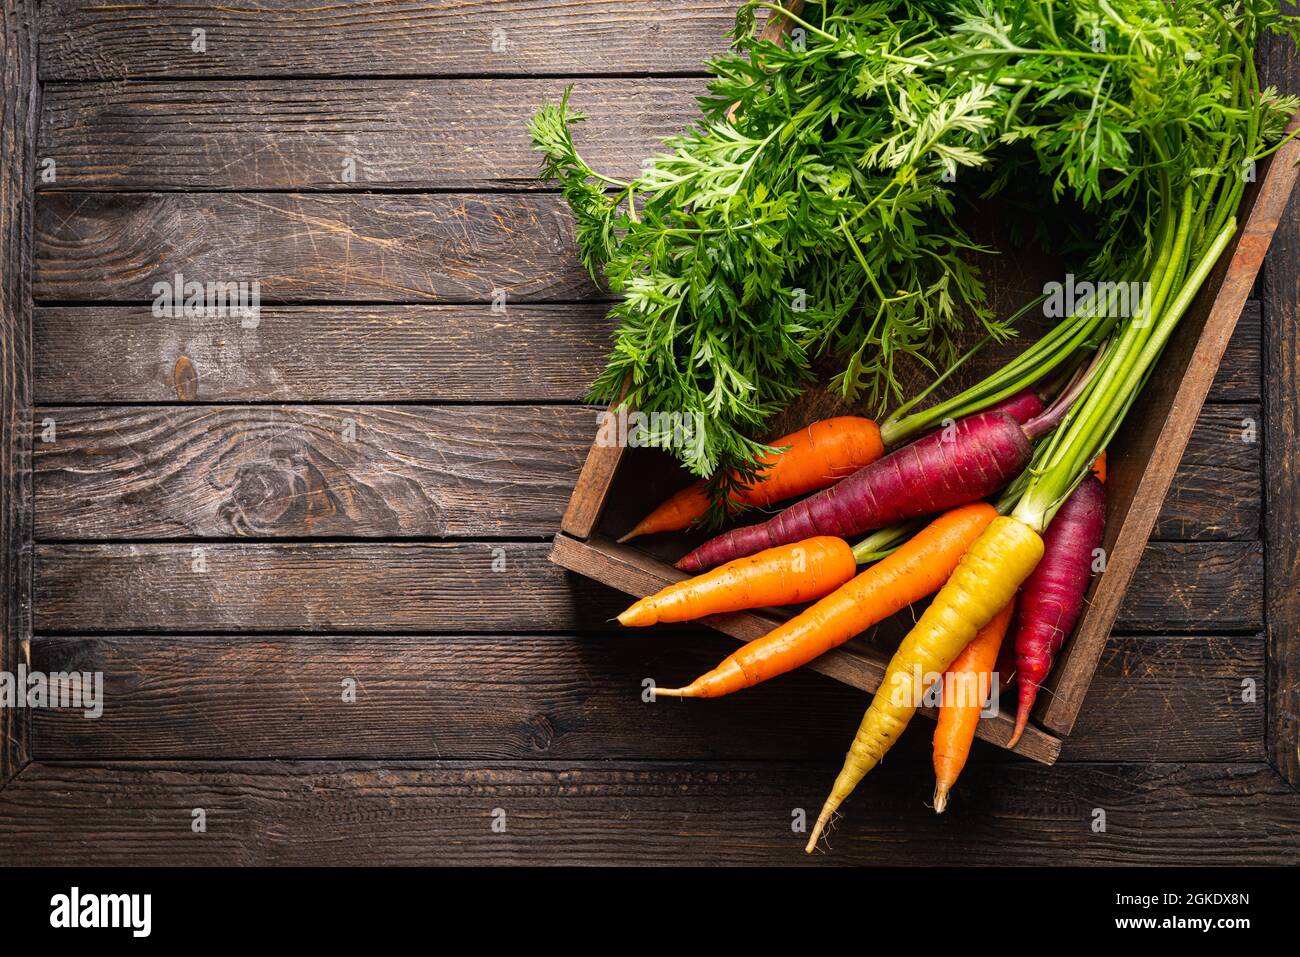 Colorata carota arcobaleno con le loro foglie verdi in una scatola su sfondo di legno, vista dall'alto Foto Stock